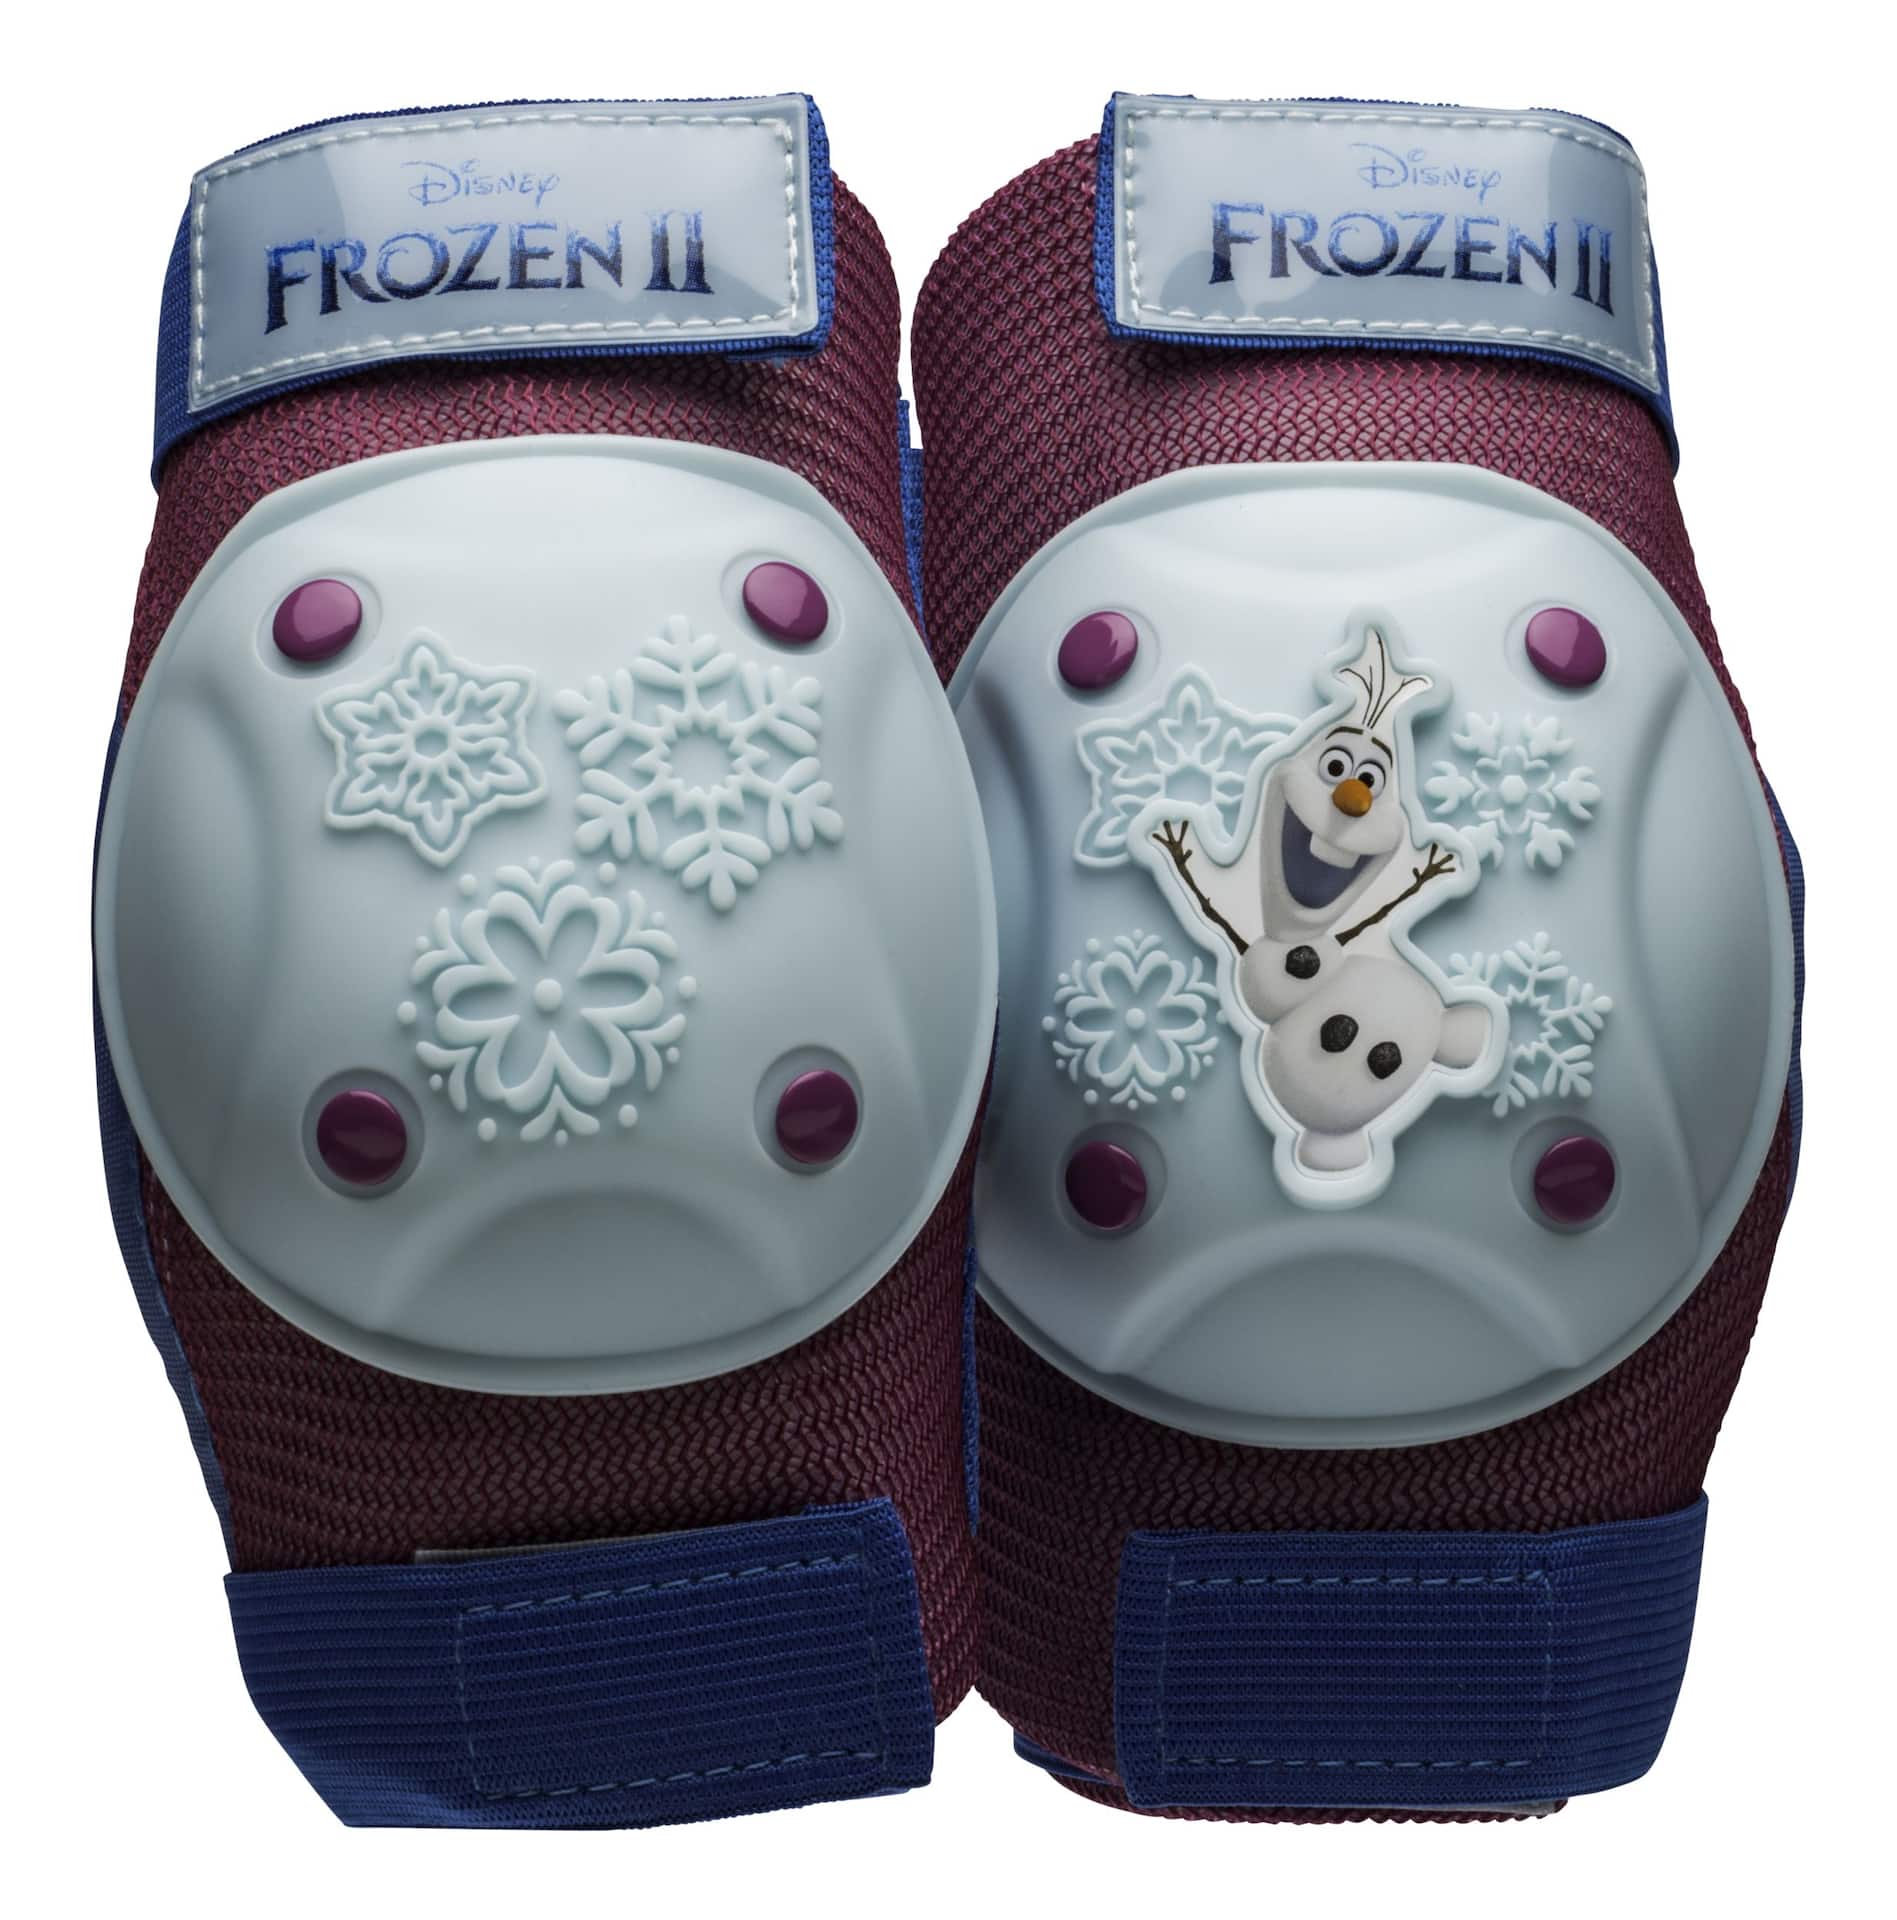 Disney Frozen 2 Kids' Protective Gear Bike Set w/Padded Gloves